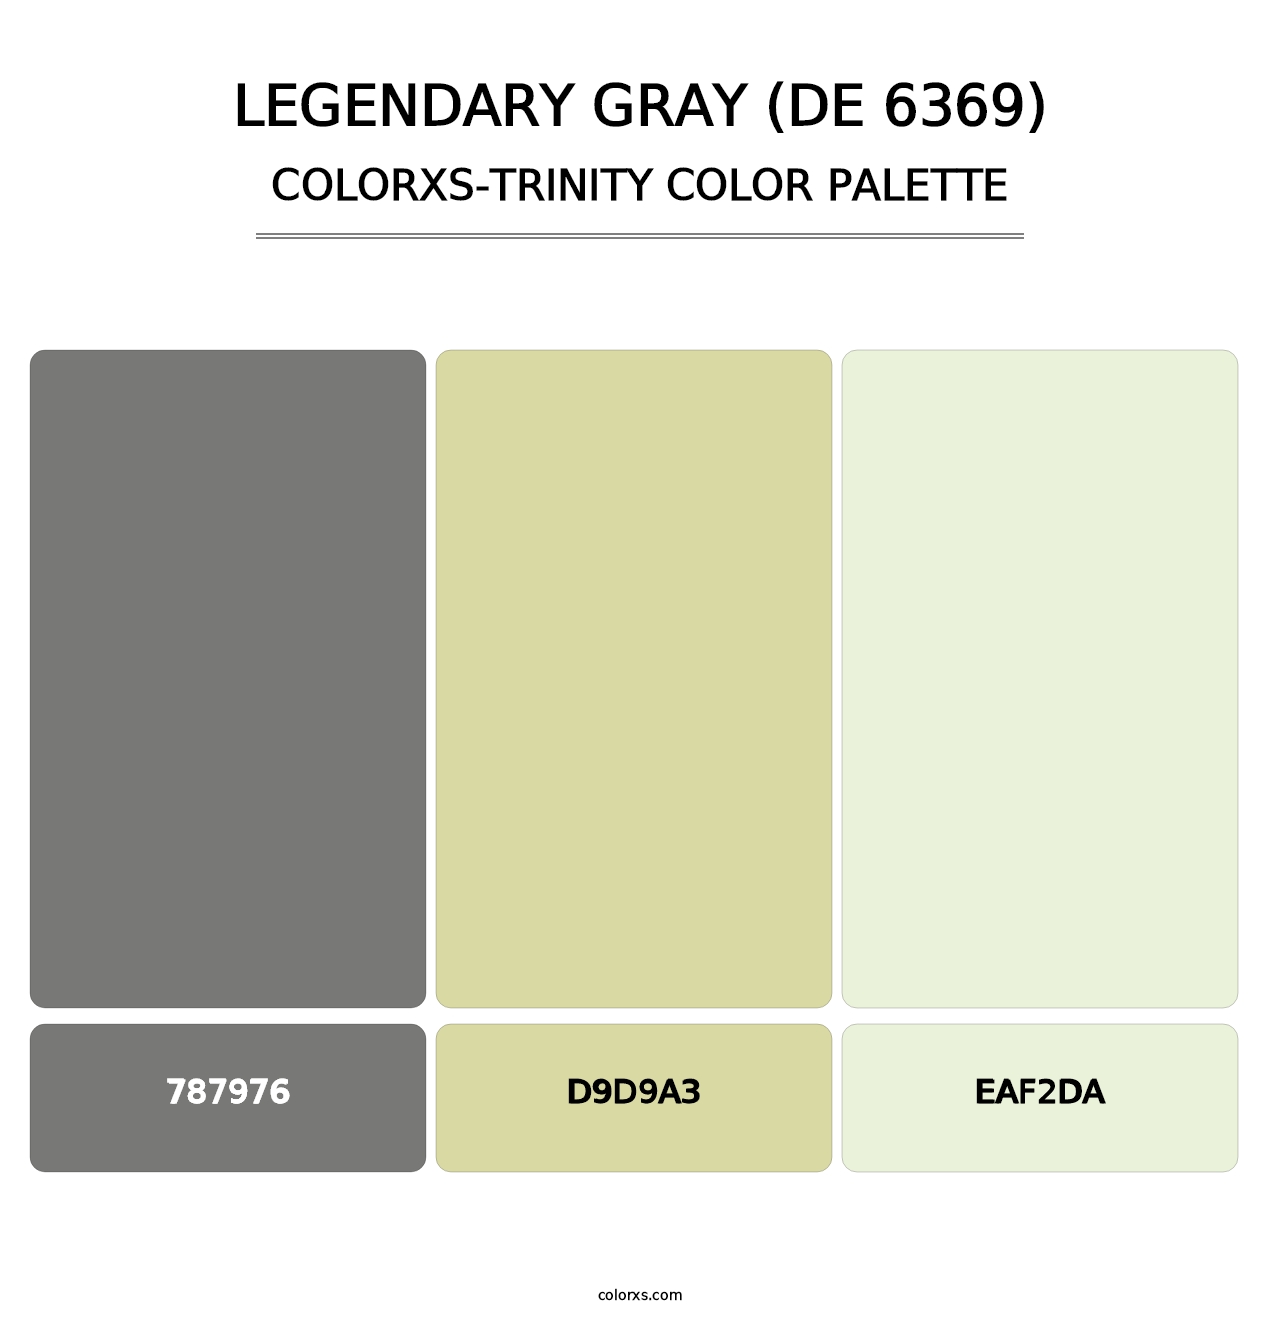 Legendary Gray (DE 6369) - Colorxs Trinity Palette